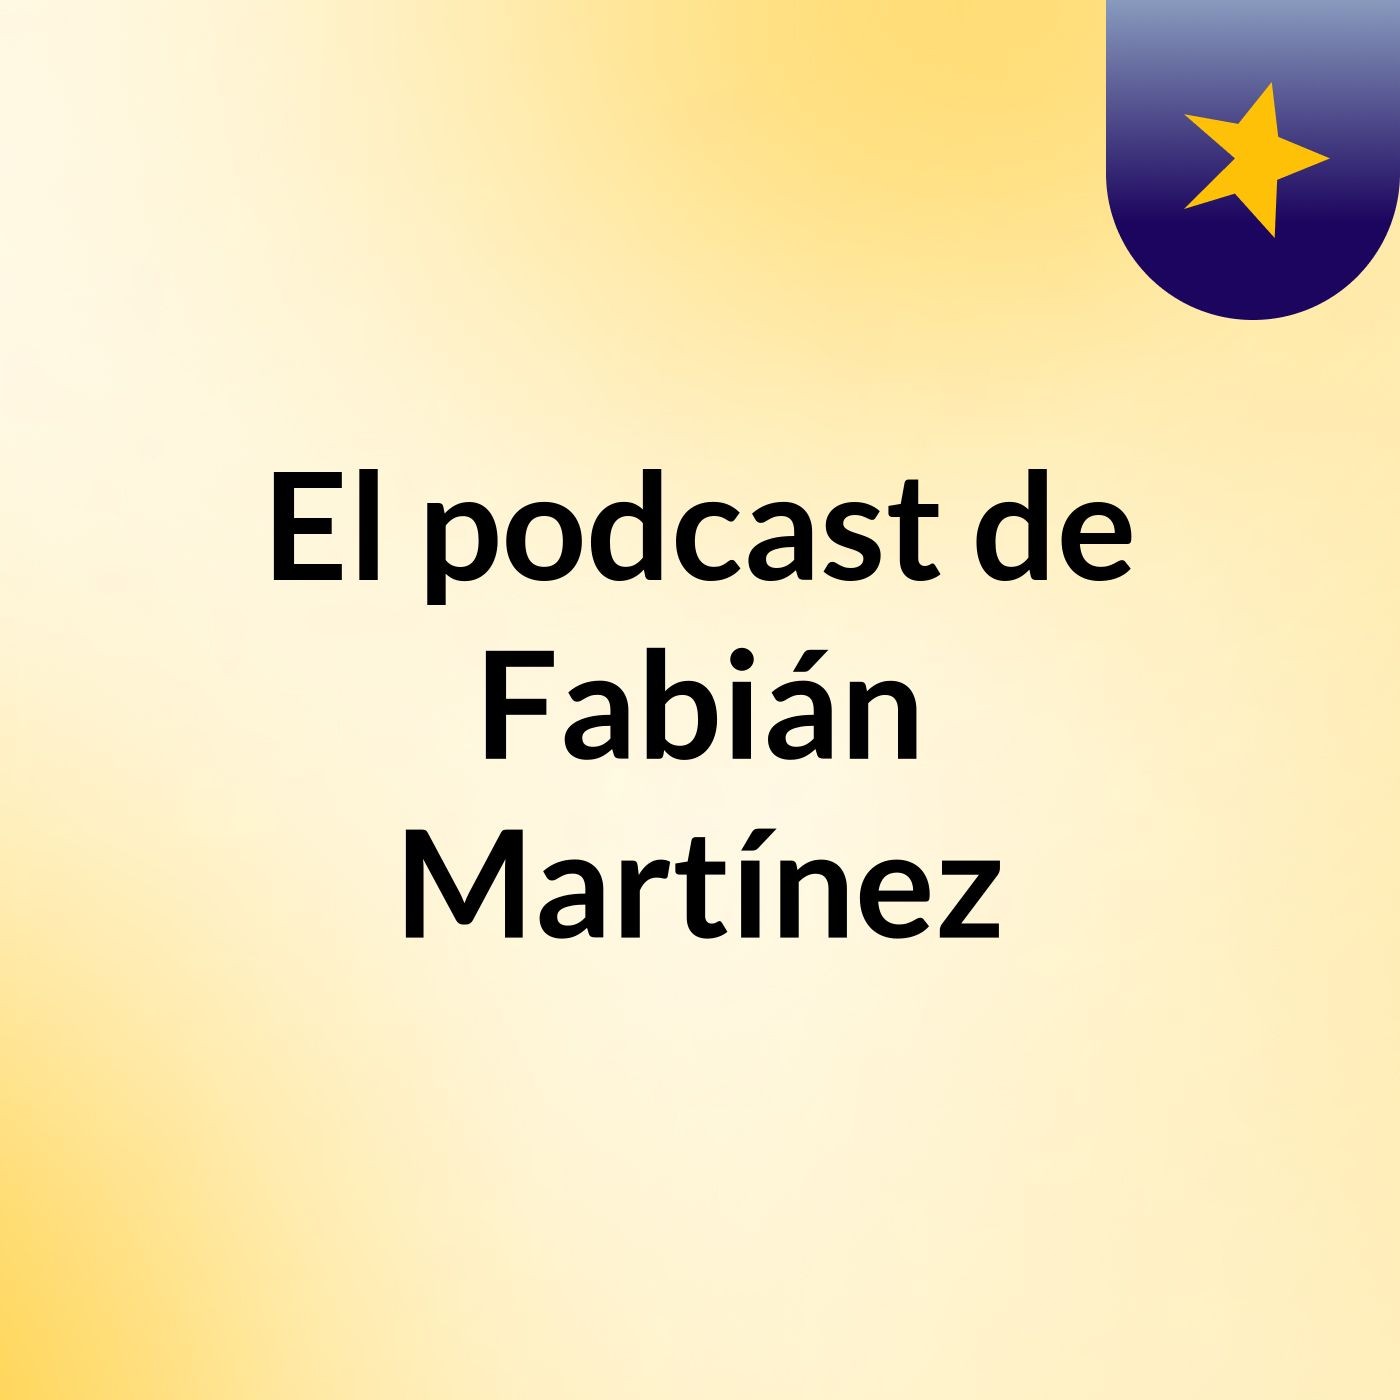 Episodio 15 - El podcast de Fabián Martínez